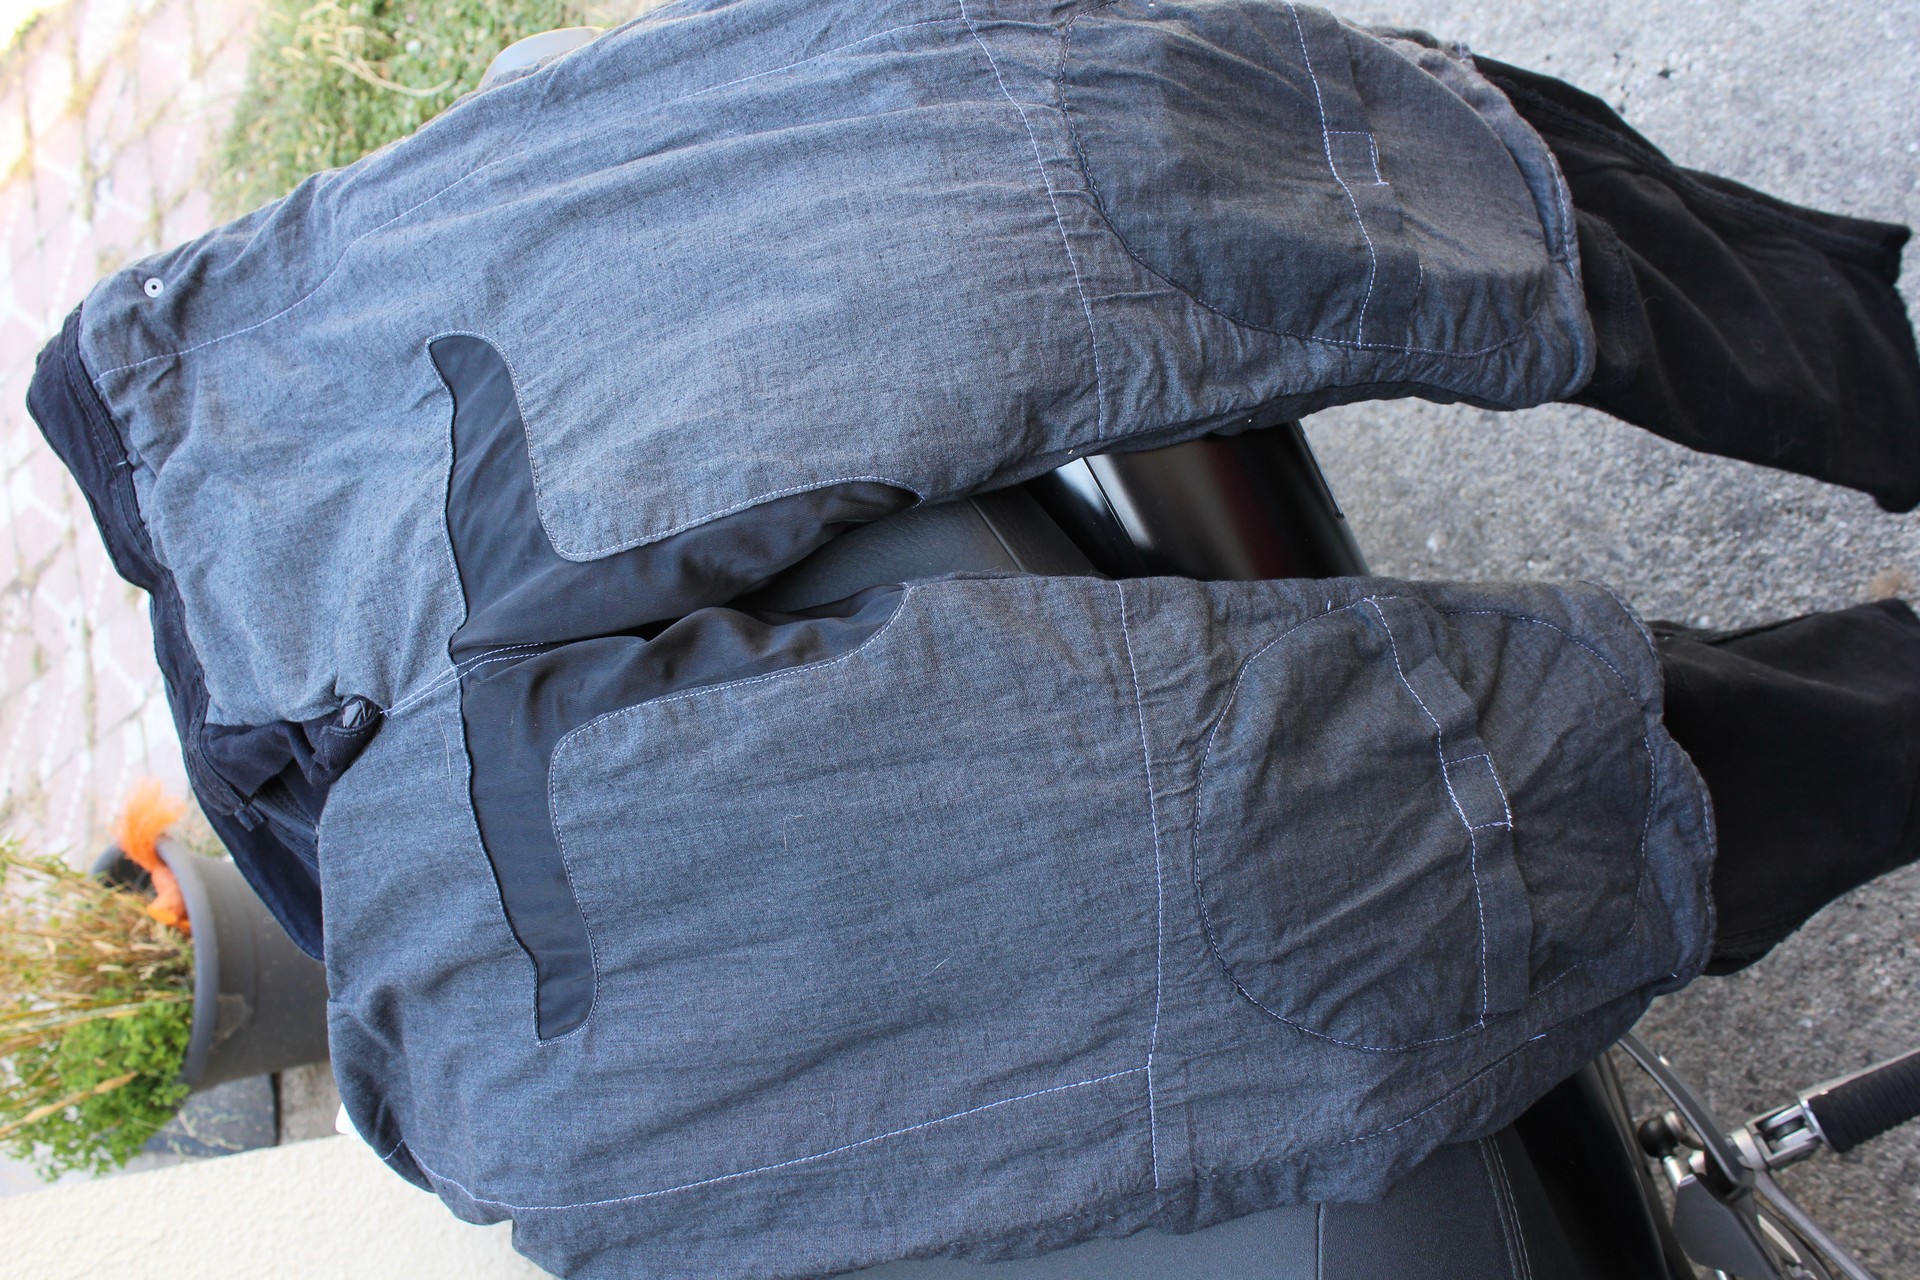 Forro de kevlar y algodón del pantalón vaquero para moto DXR Boost